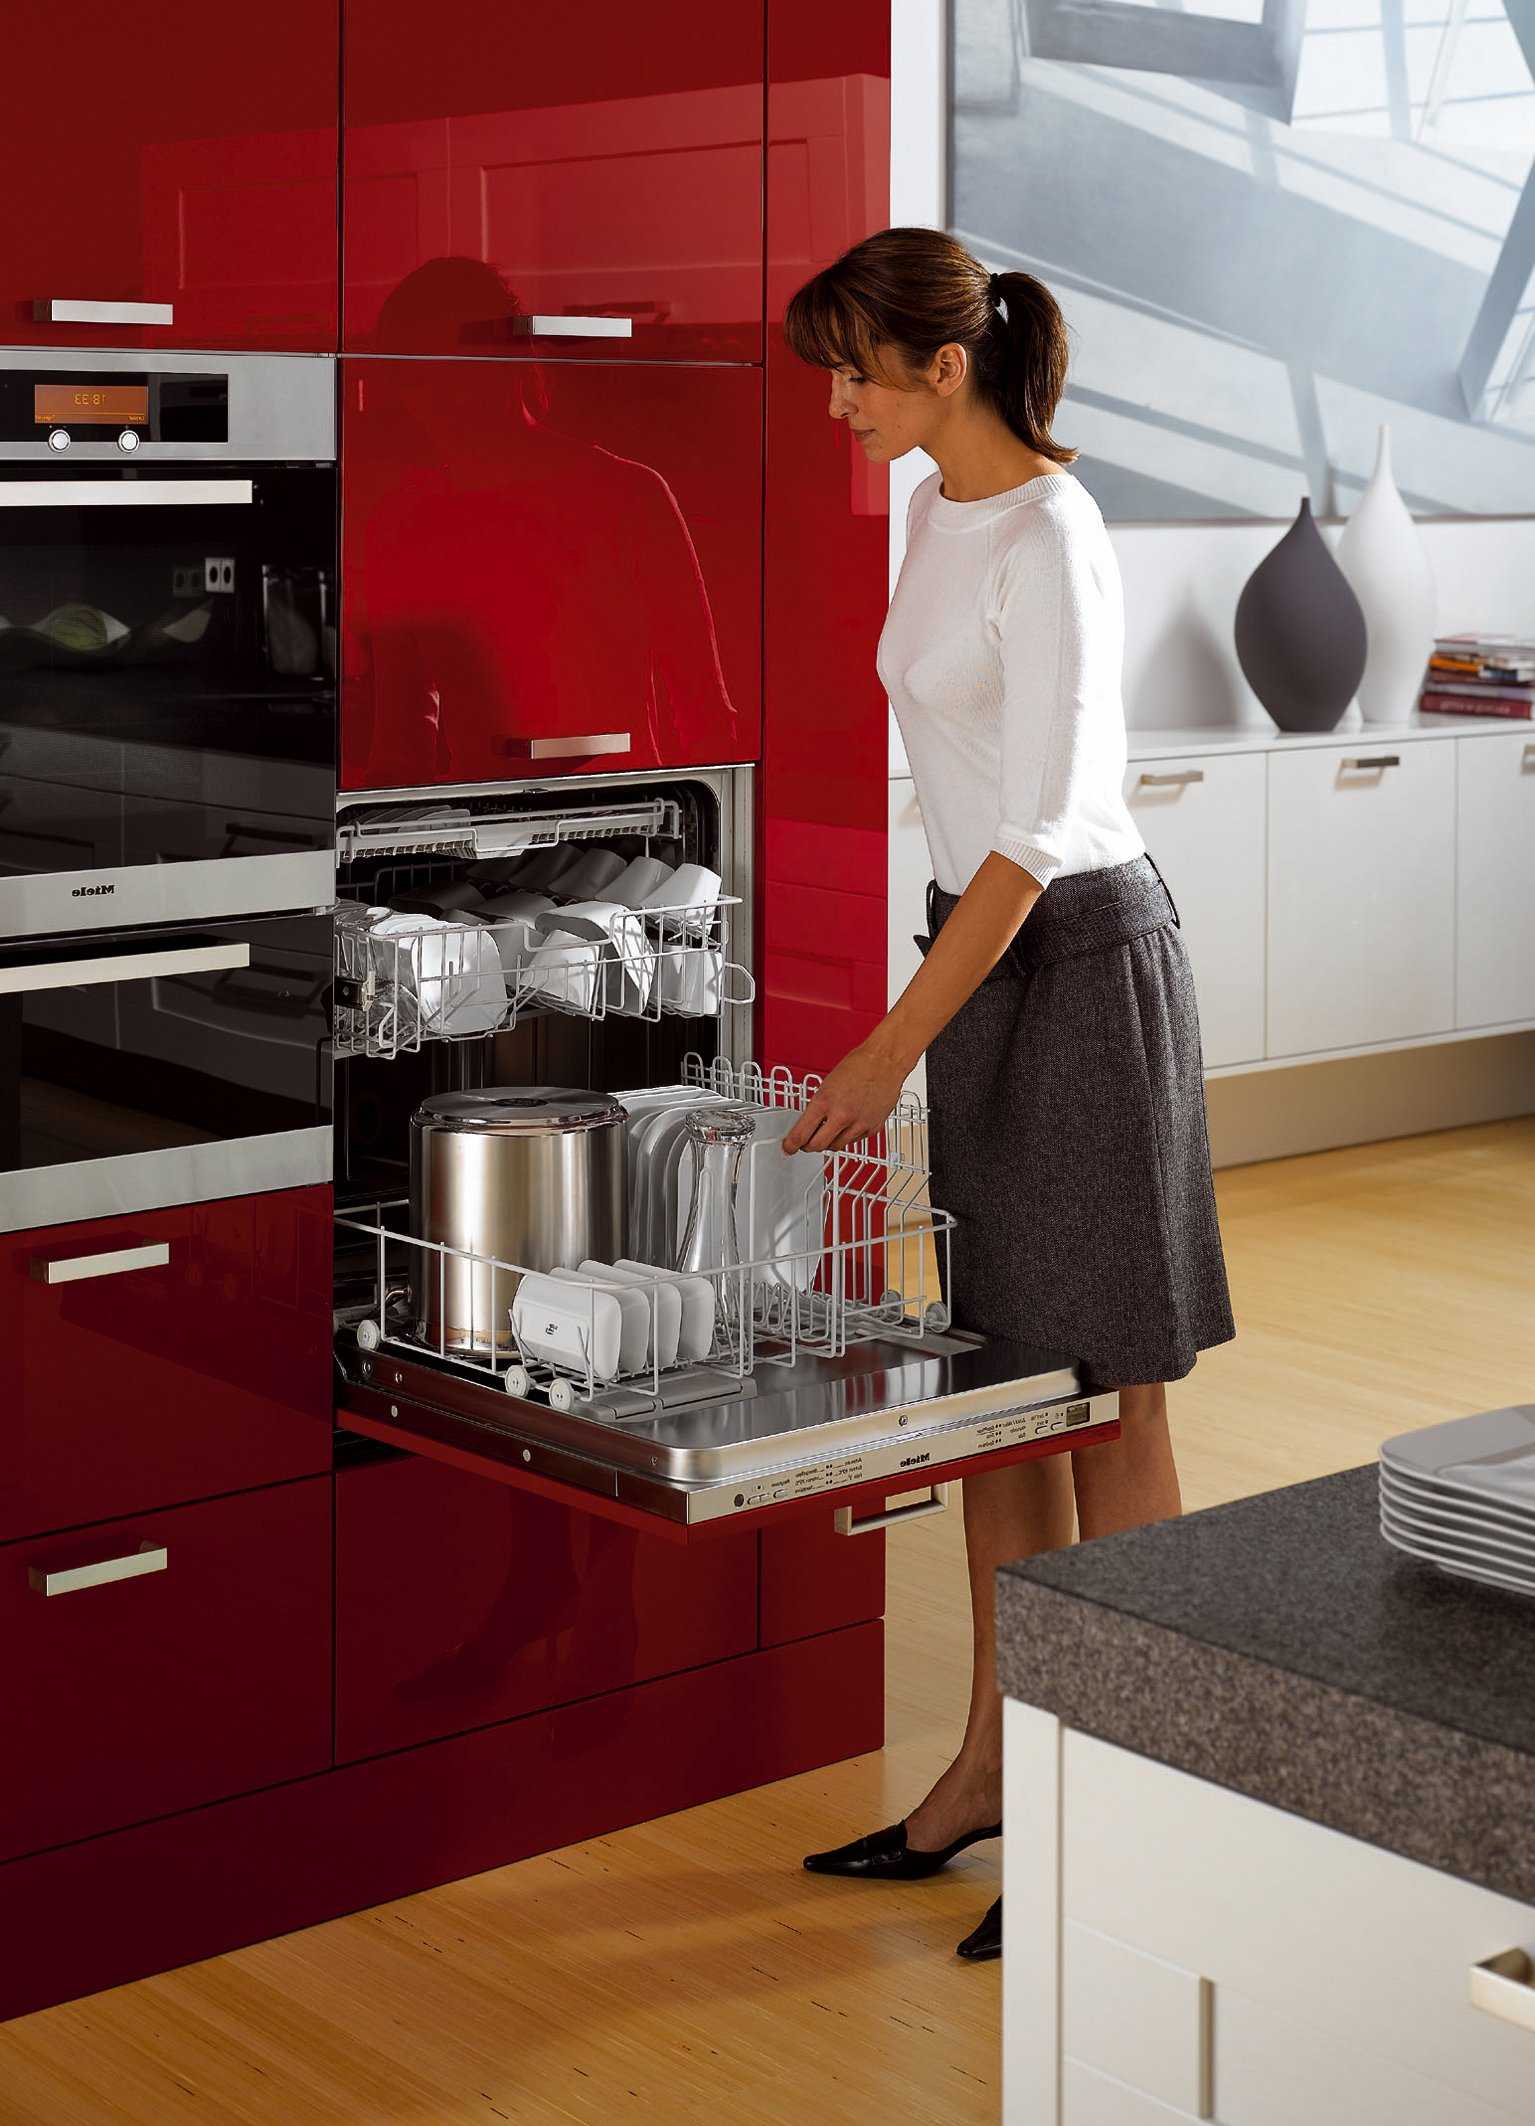 Стиральная машина на кухне: варианты установки, отзывы, плюсы и минусы | современные и модные кухни